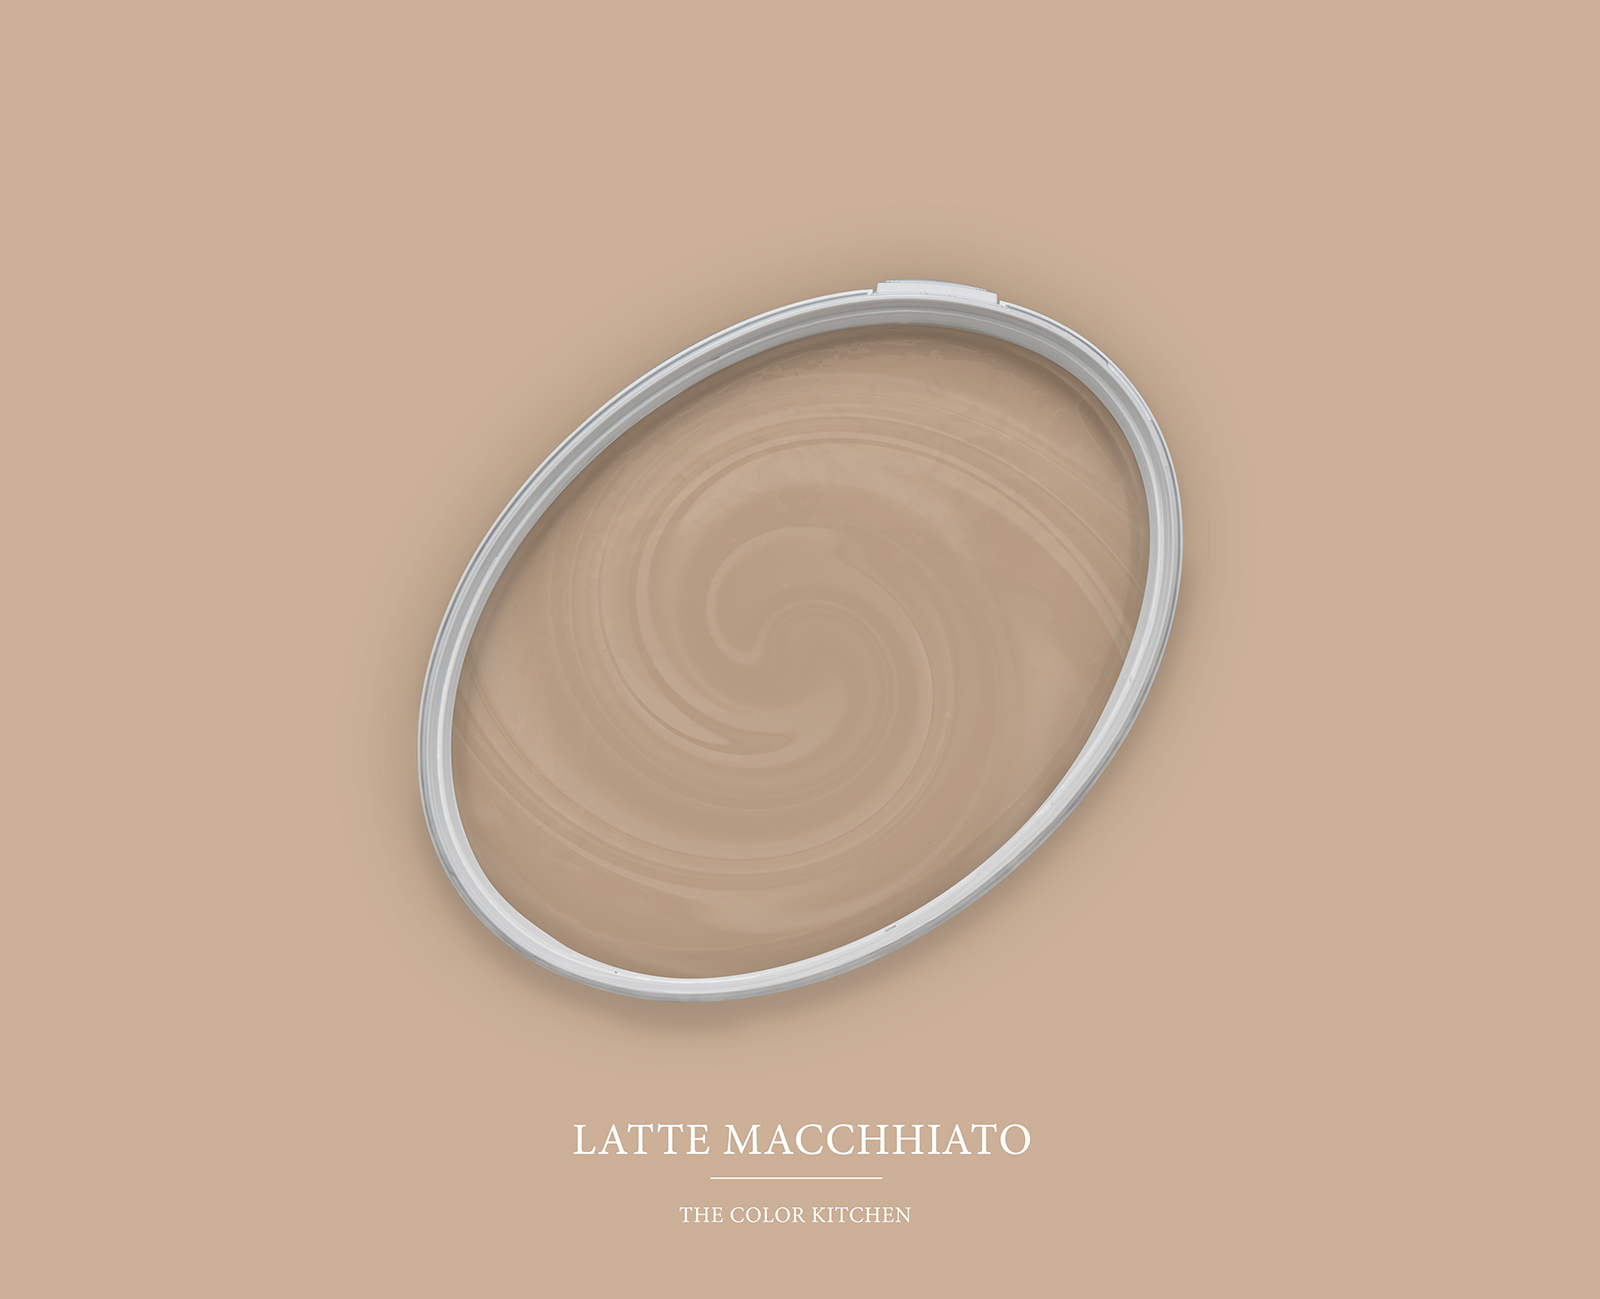 Muurverf TCK6010 »Latte Macchhiato« in natuurbeige – 2,5 liter
